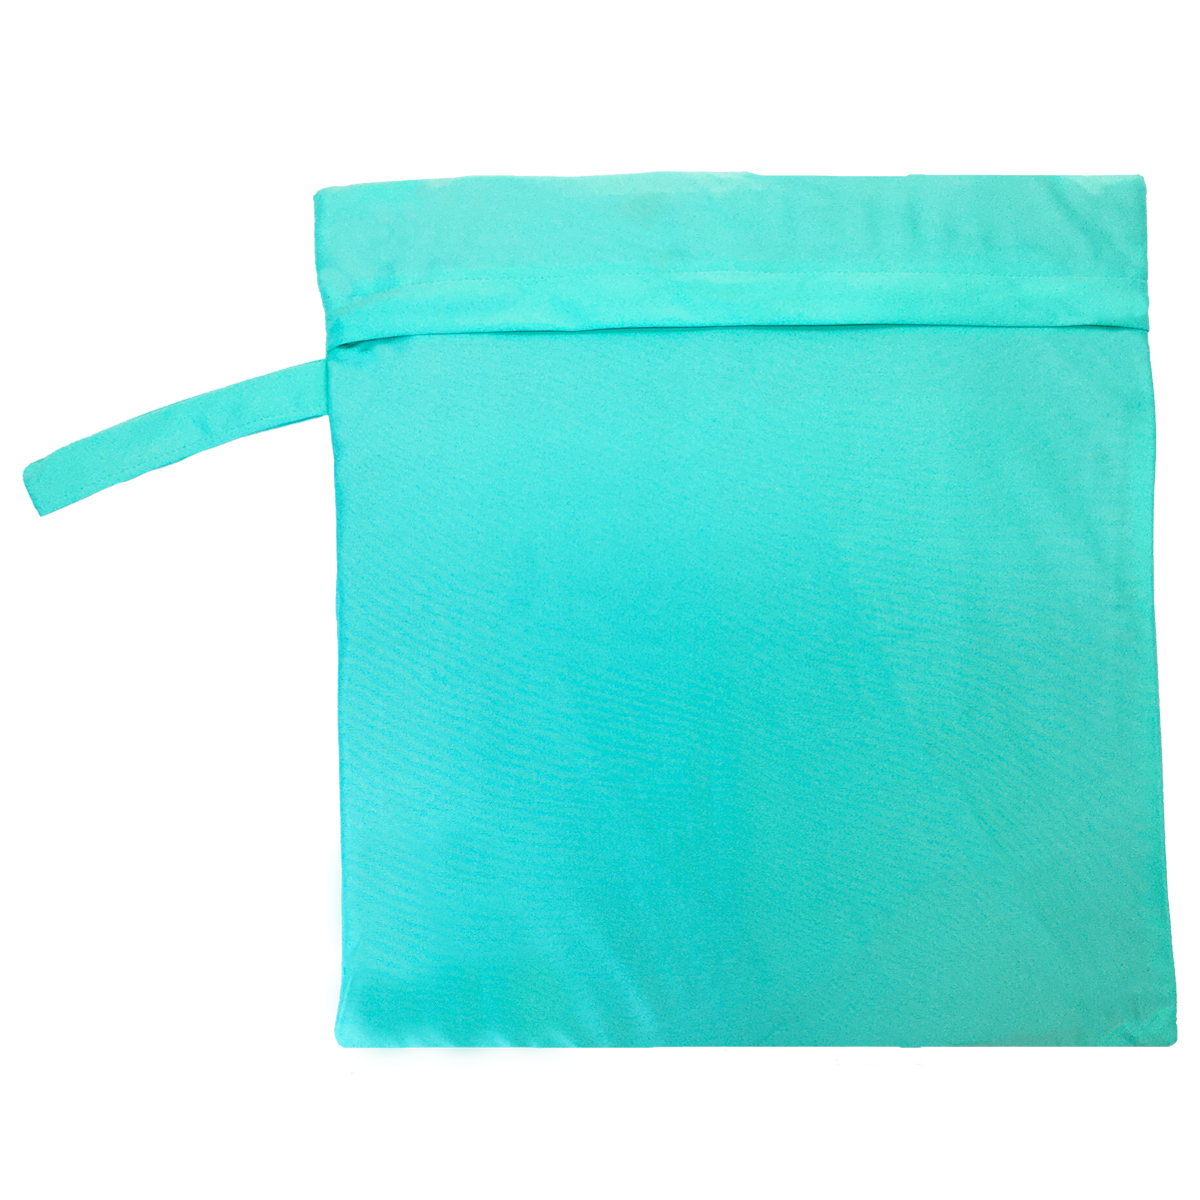 Bolsa impermeable de algodón revestido azul y turquesa para la